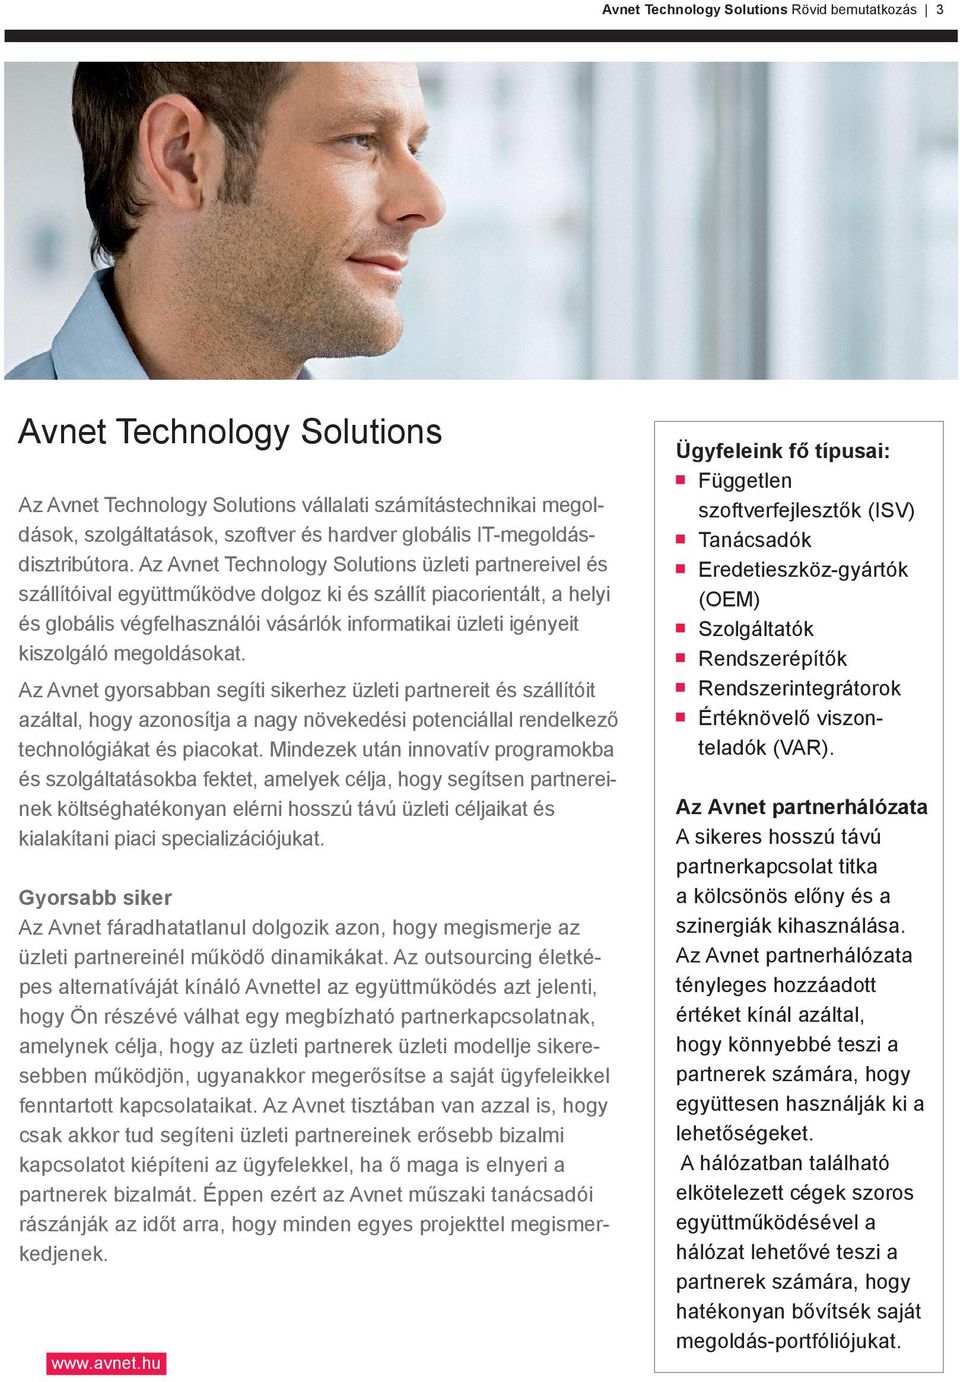 Az Avnet Technology Solutions üzleti partnereivel és szállítóival együttműködve dolgoz ki és szállít piacorientált, a helyi és globális végfelhasználói vásárlók informatikai üzleti igényeit